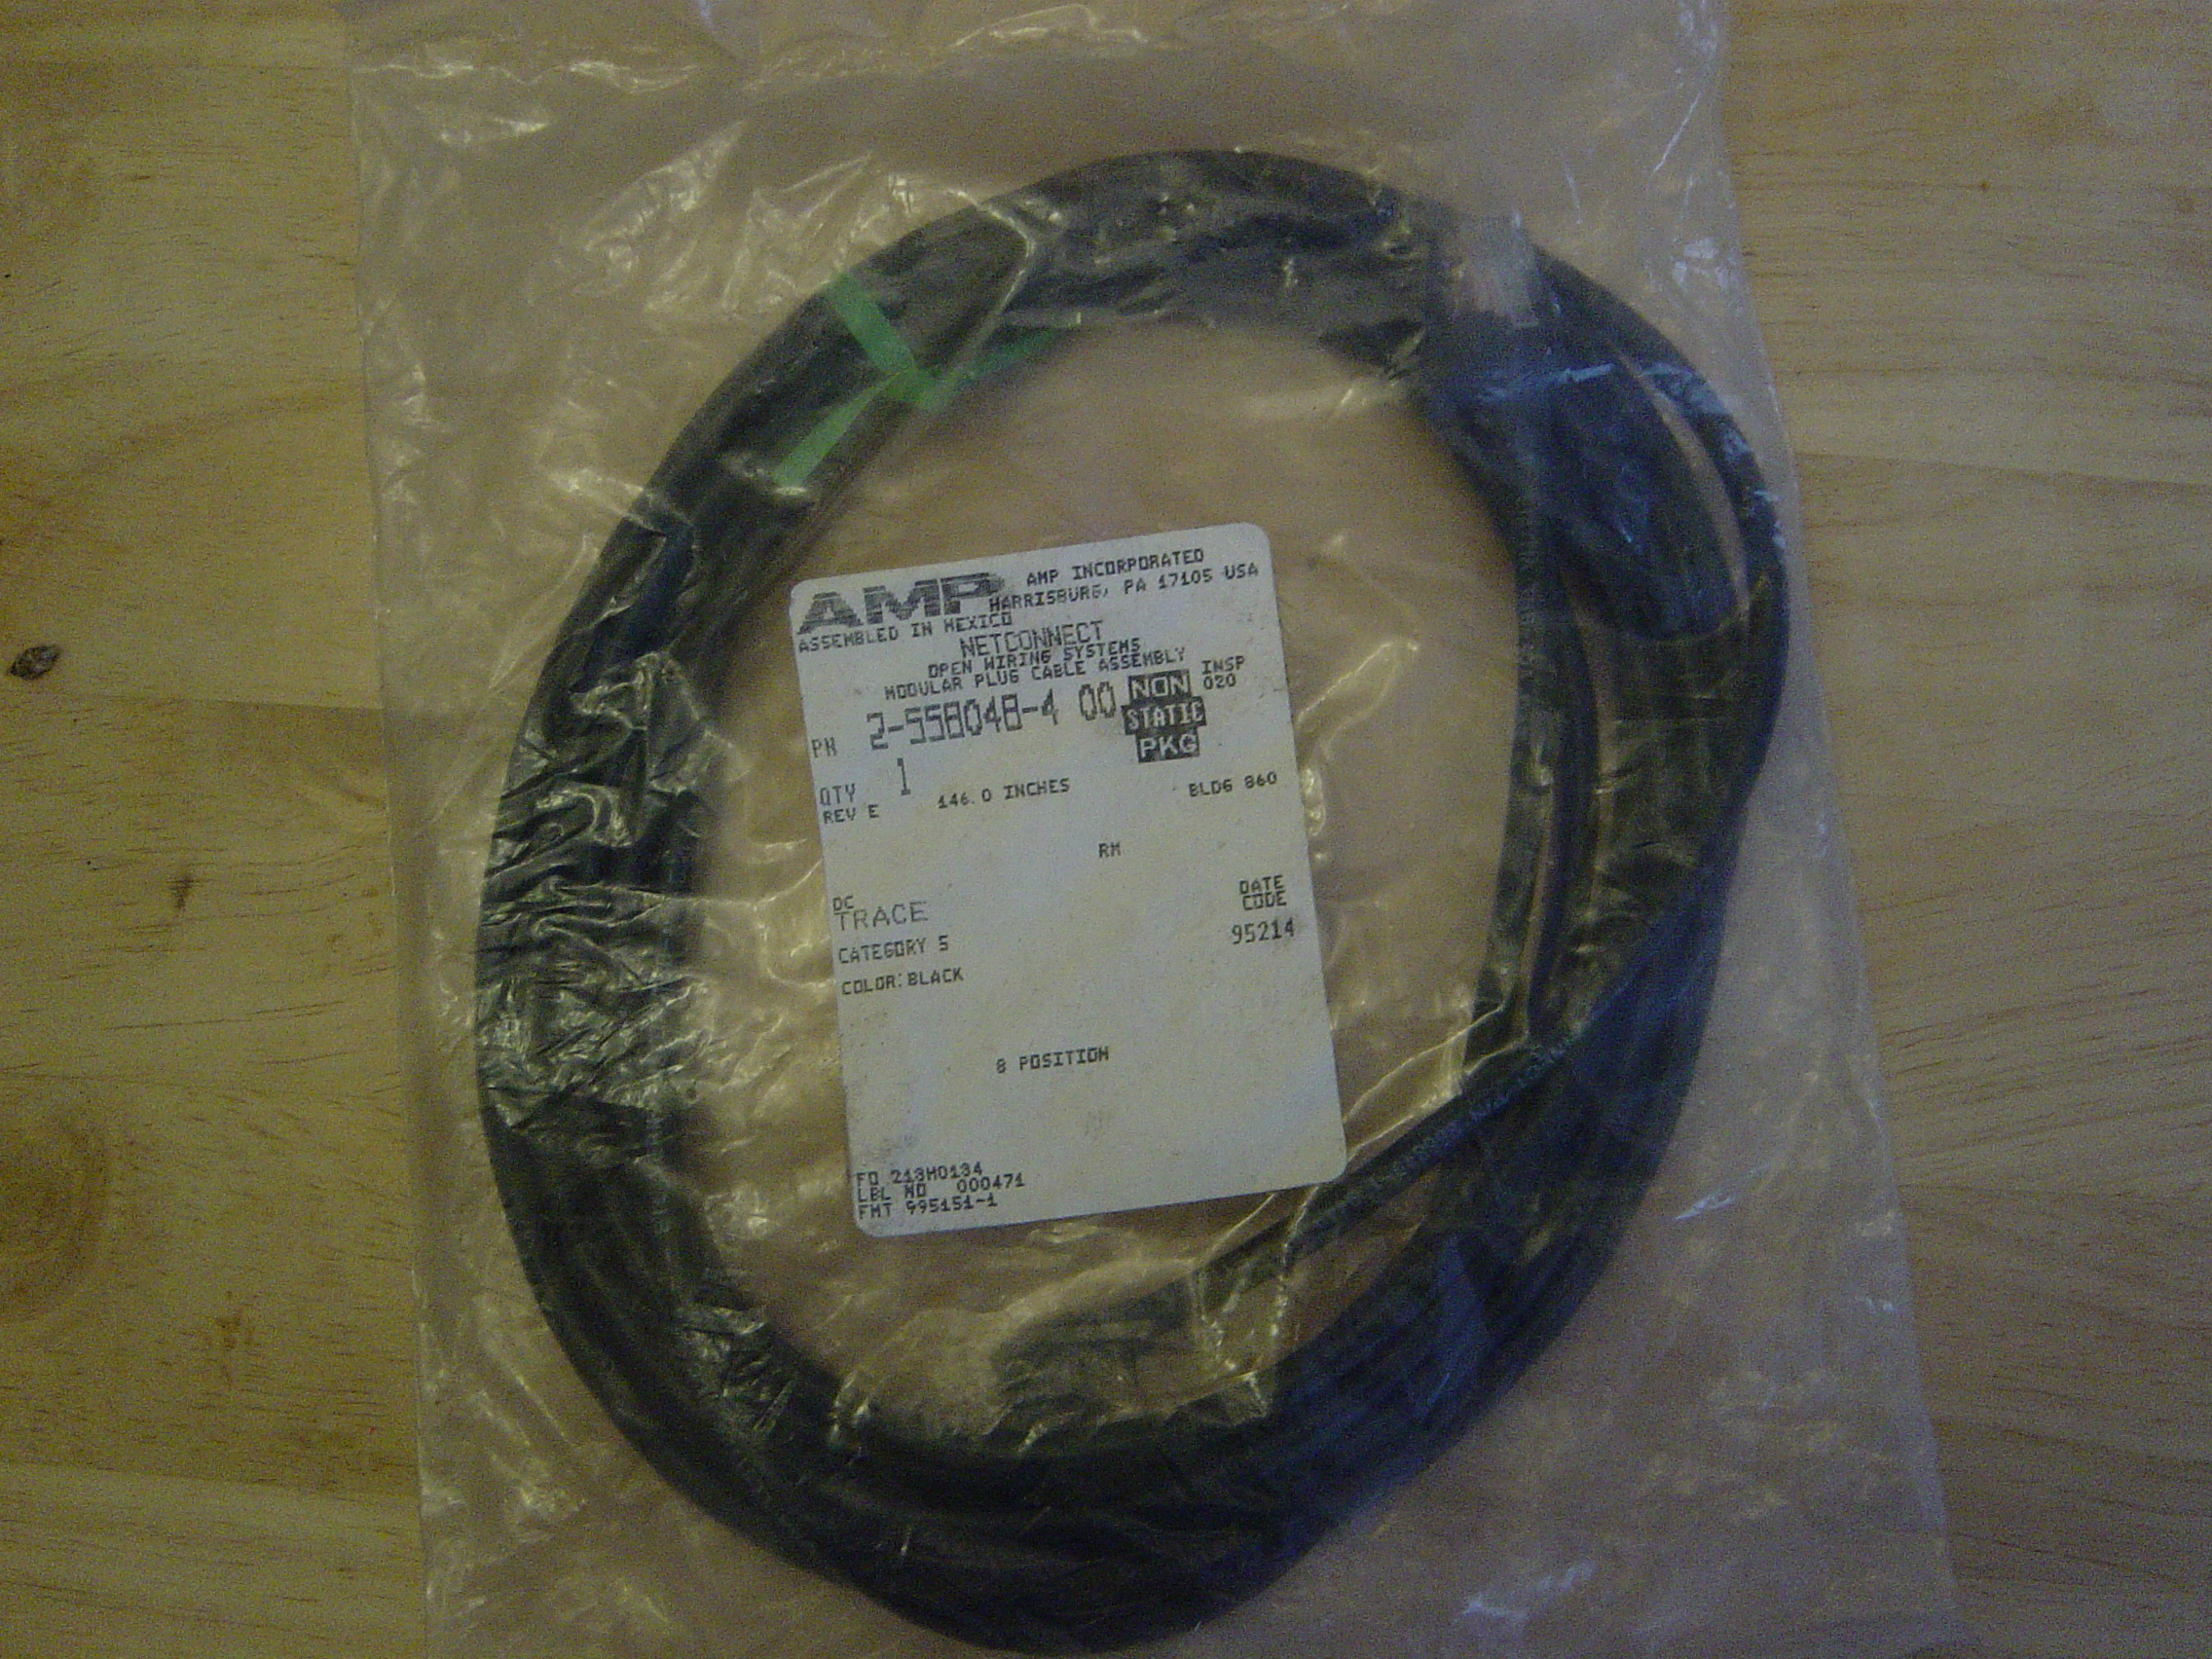 AMP Netconnect modular plug cable - 12 feet